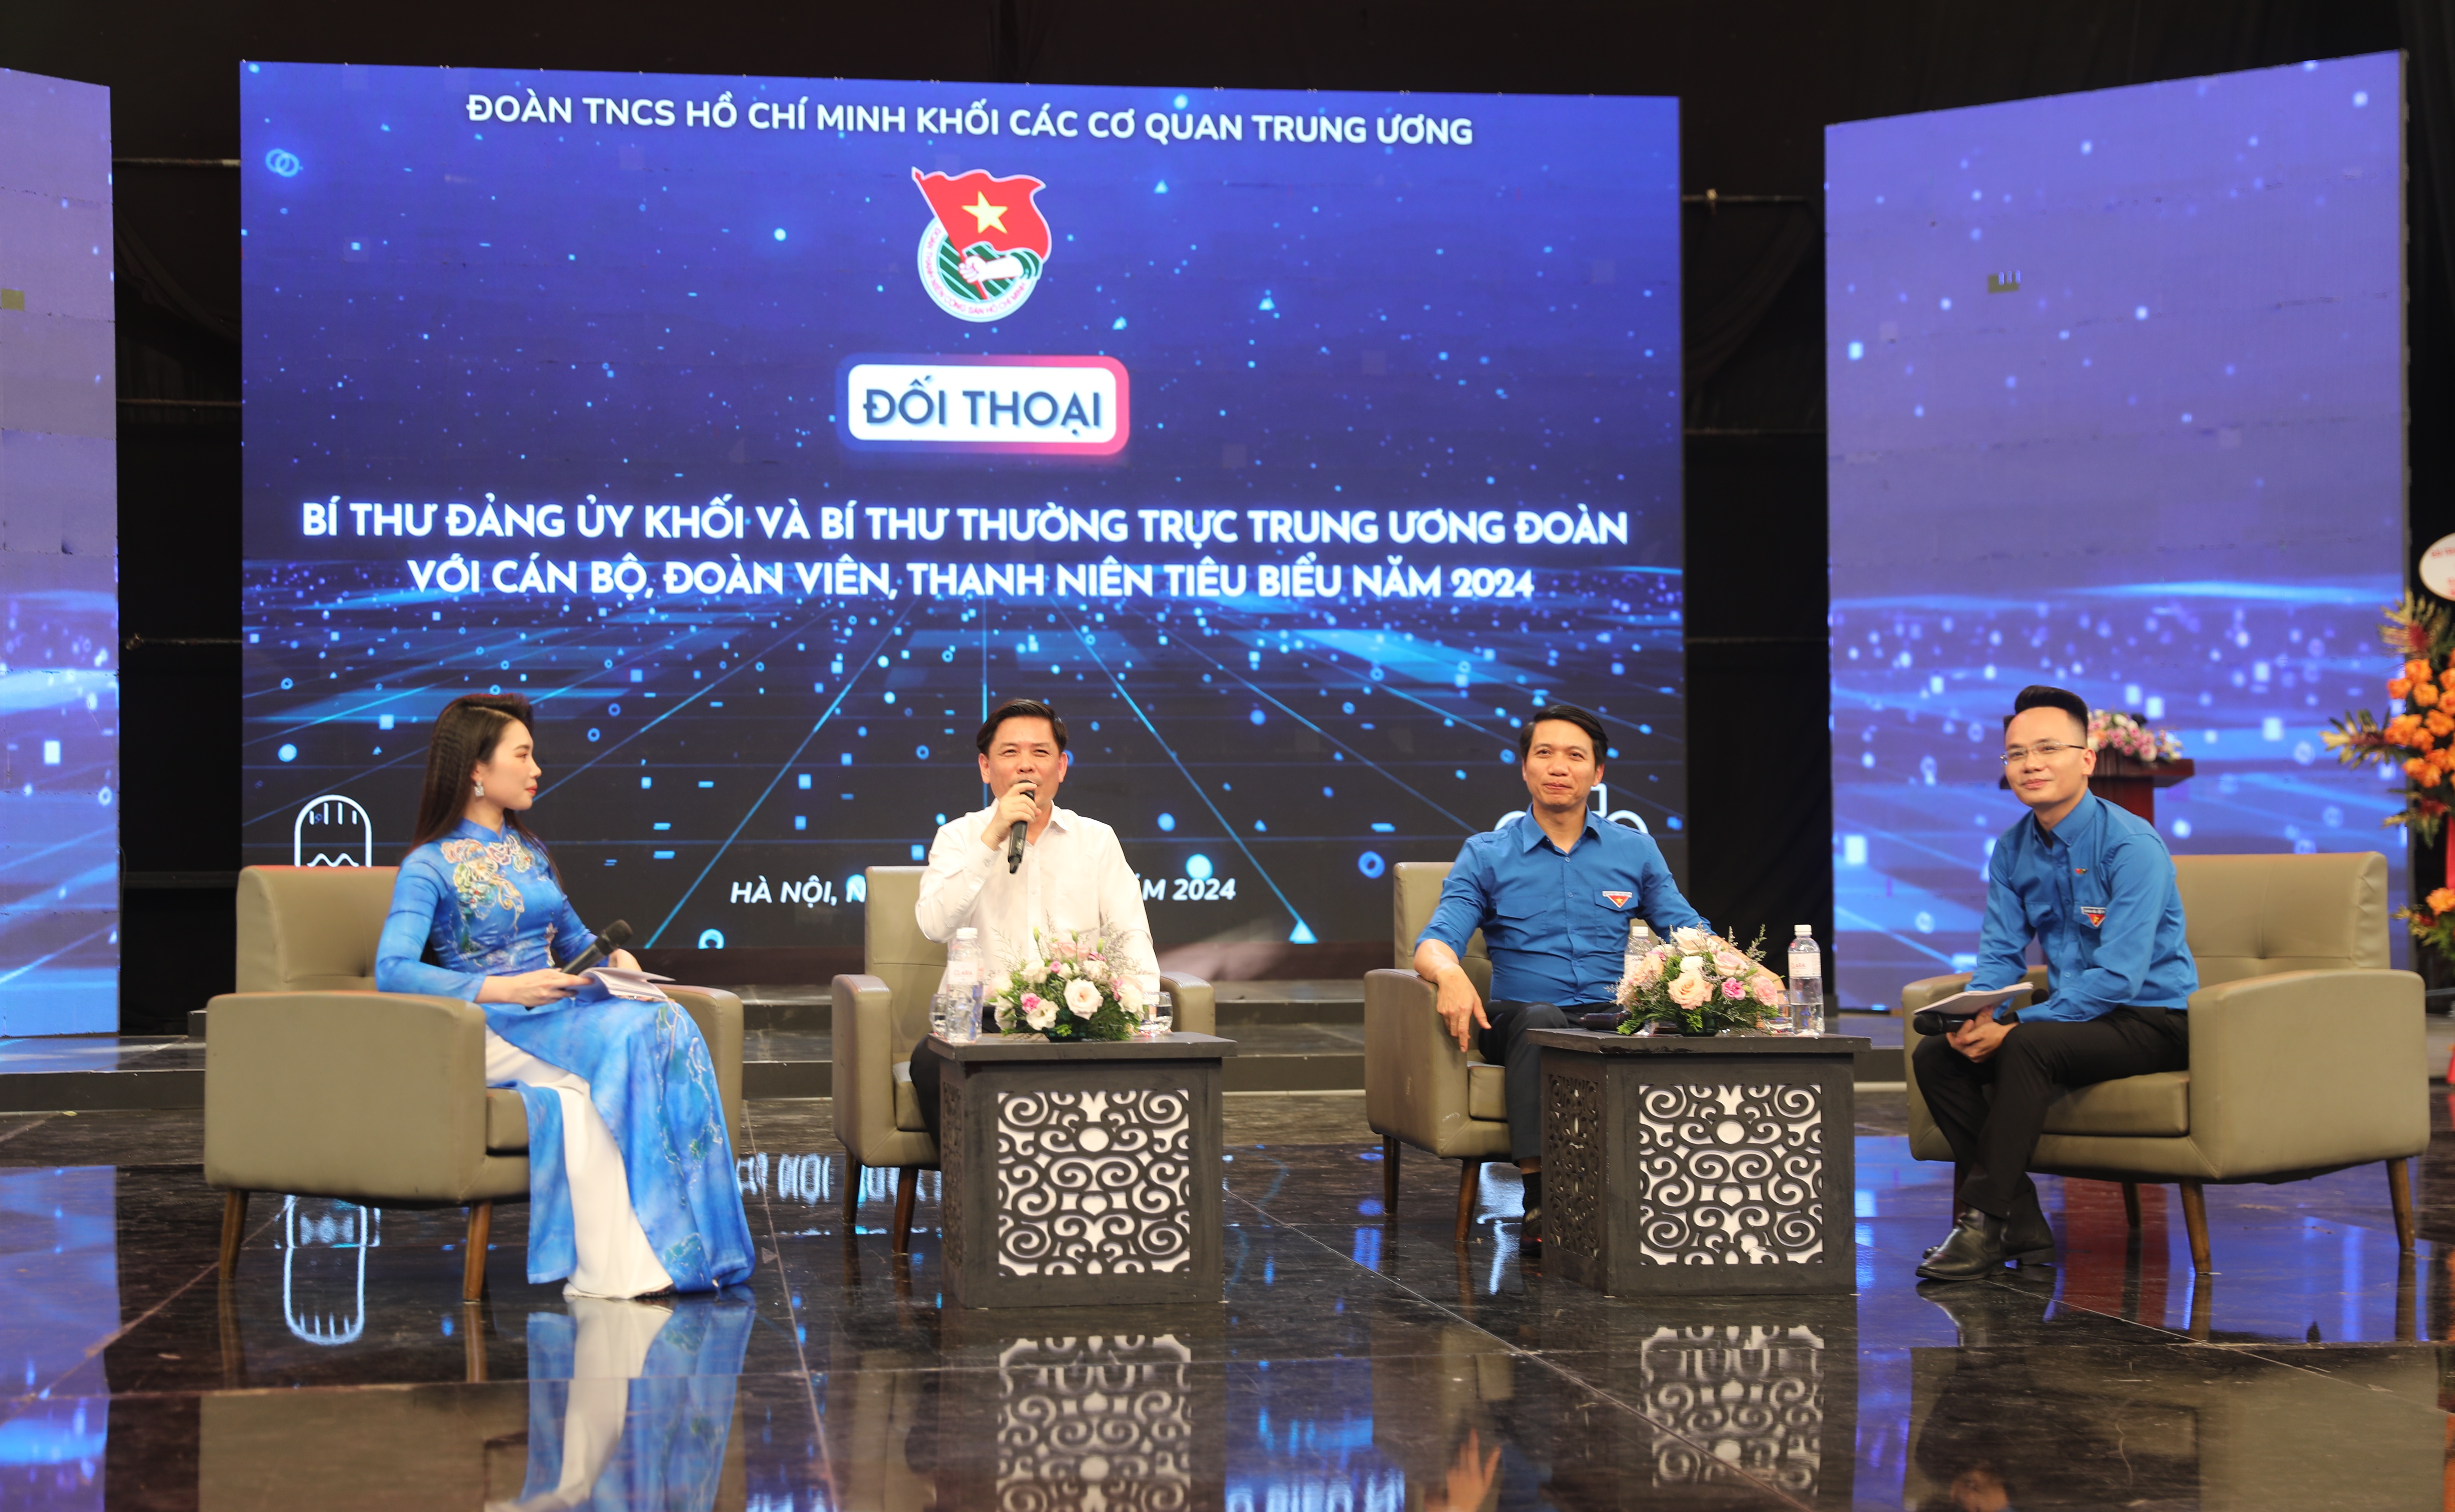 Bí thư Đảng ủy Khối Nguyễn Văn Thể trao đổi với các đoàn viên, thanh niên tại cuộc đối thoại.